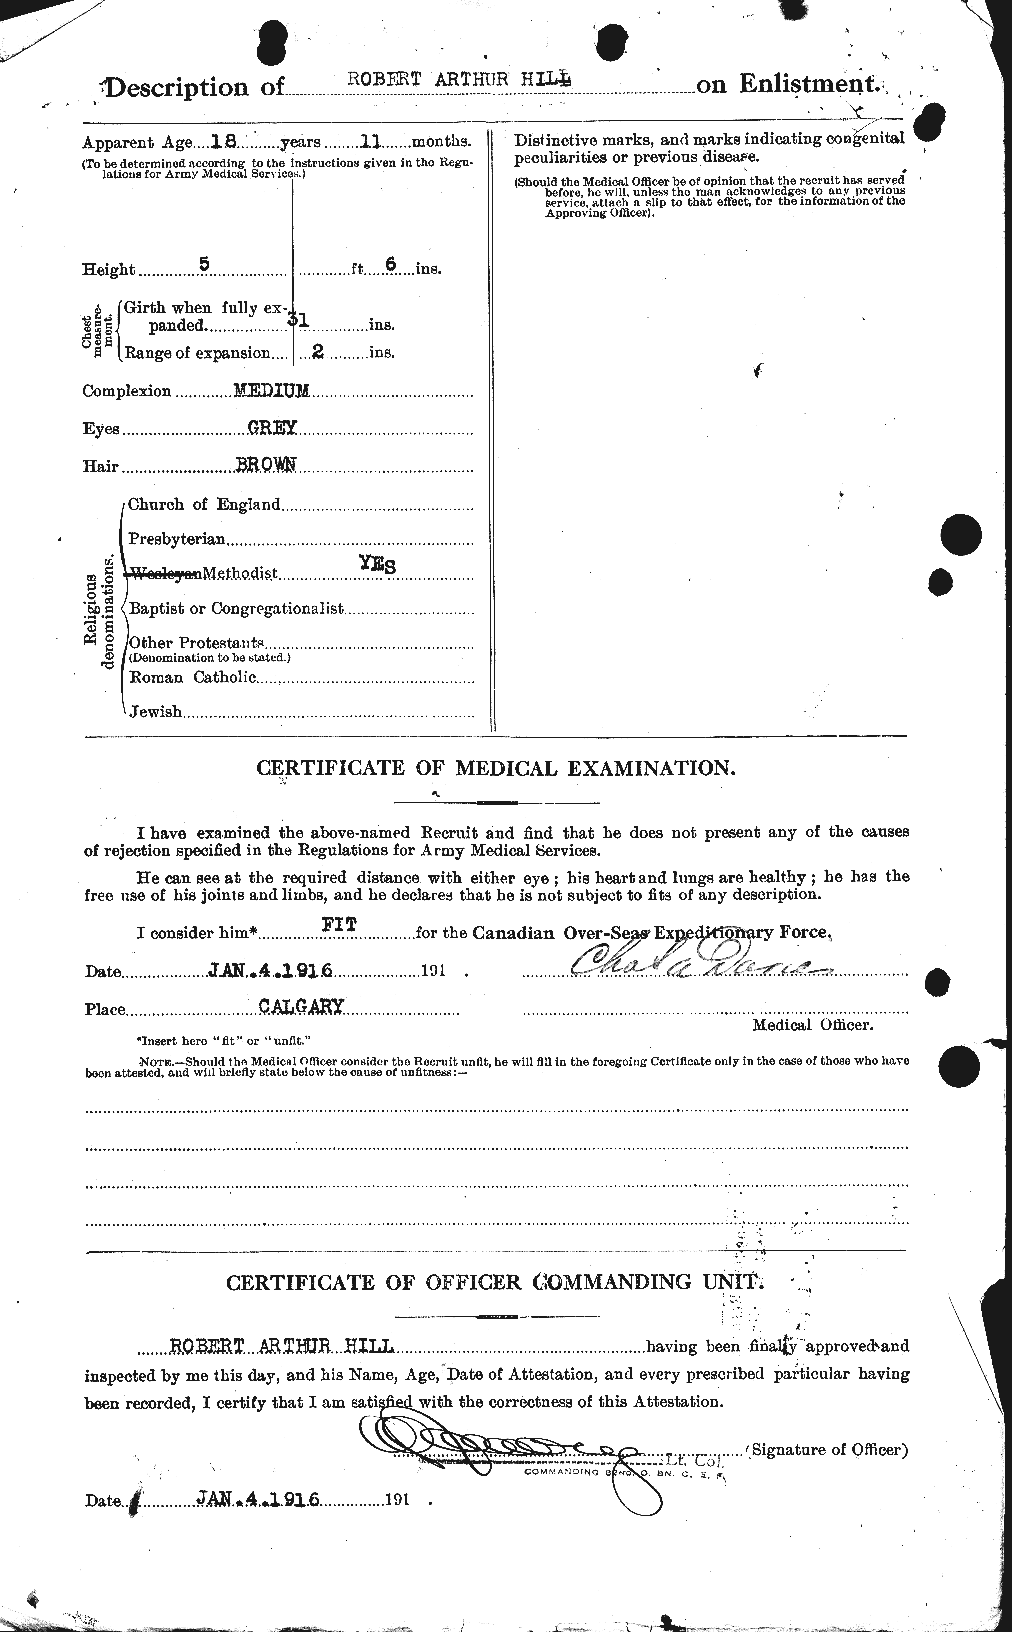 Dossiers du Personnel de la Première Guerre mondiale - CEC 404377b